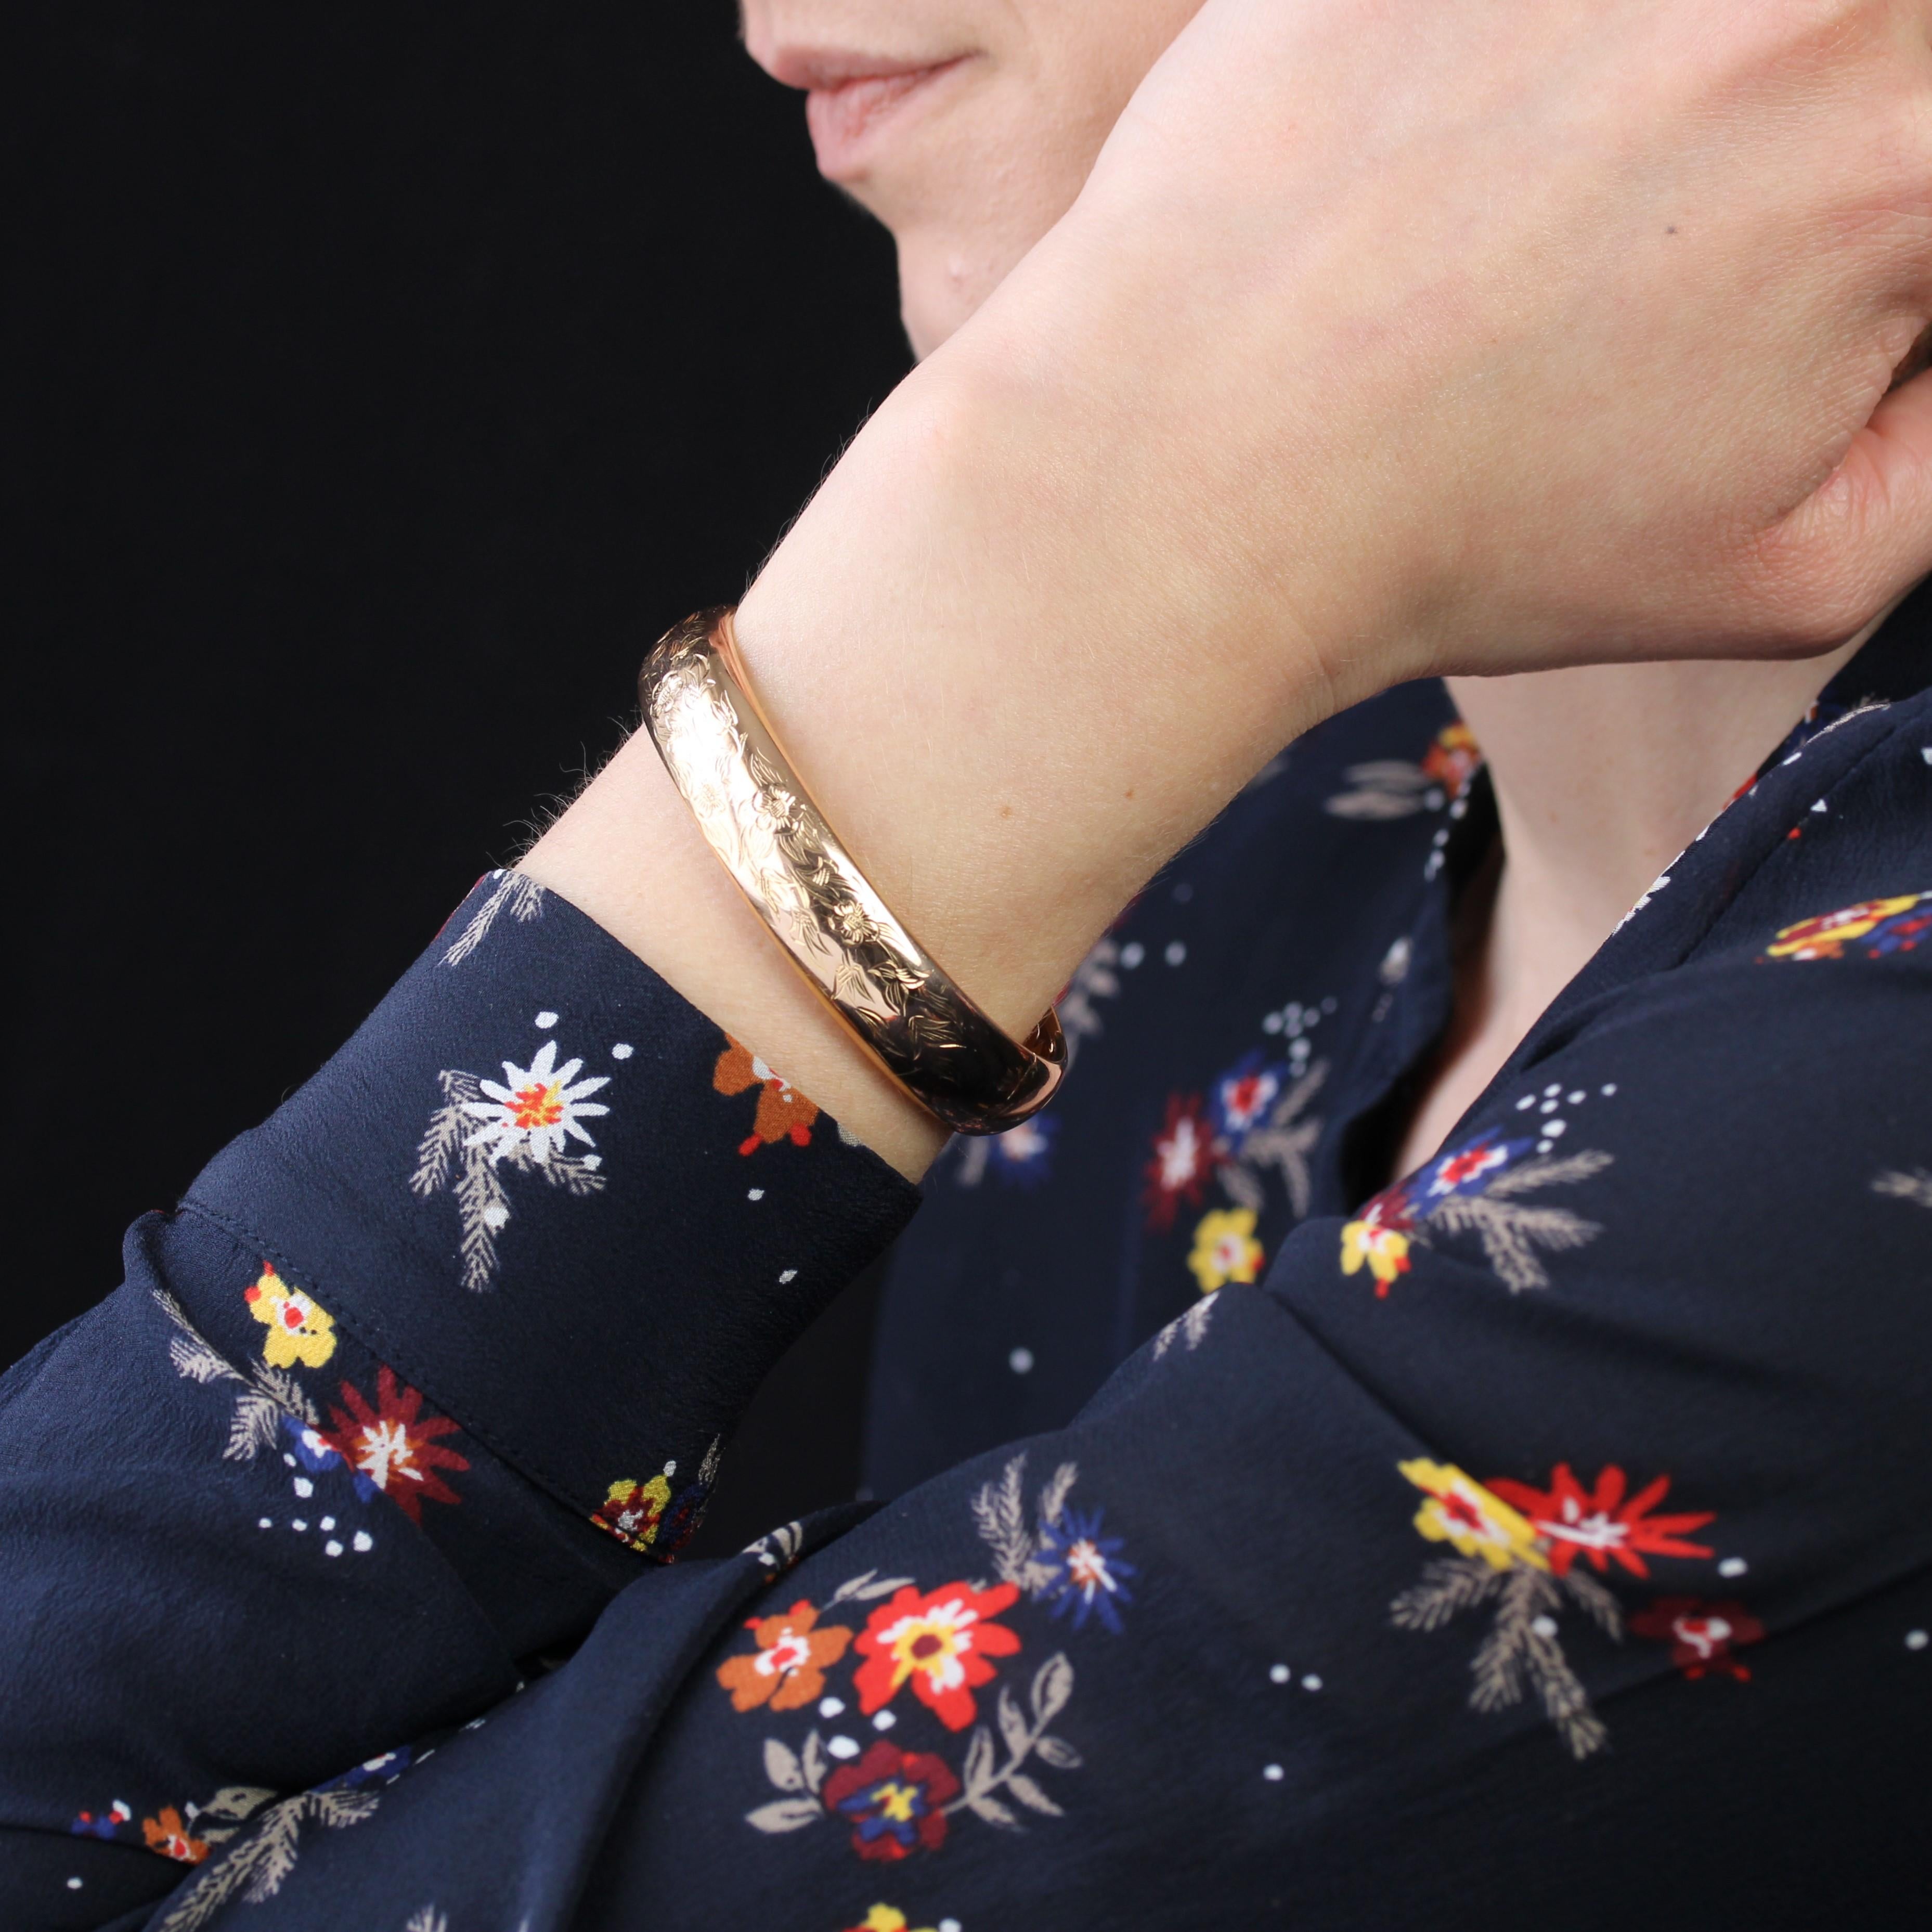 Armband aus 18 Karat Roségold, Nashornkopfpunzen.
Dieses schöne antike Armband hat eine ovale Form und ist ein gewölbtes Halbarmband mit eingravierten Blumenmotiven auf der Oberseite. Der Verschluss ist mit einer Ratsche und 8 Sicherheitsstiften